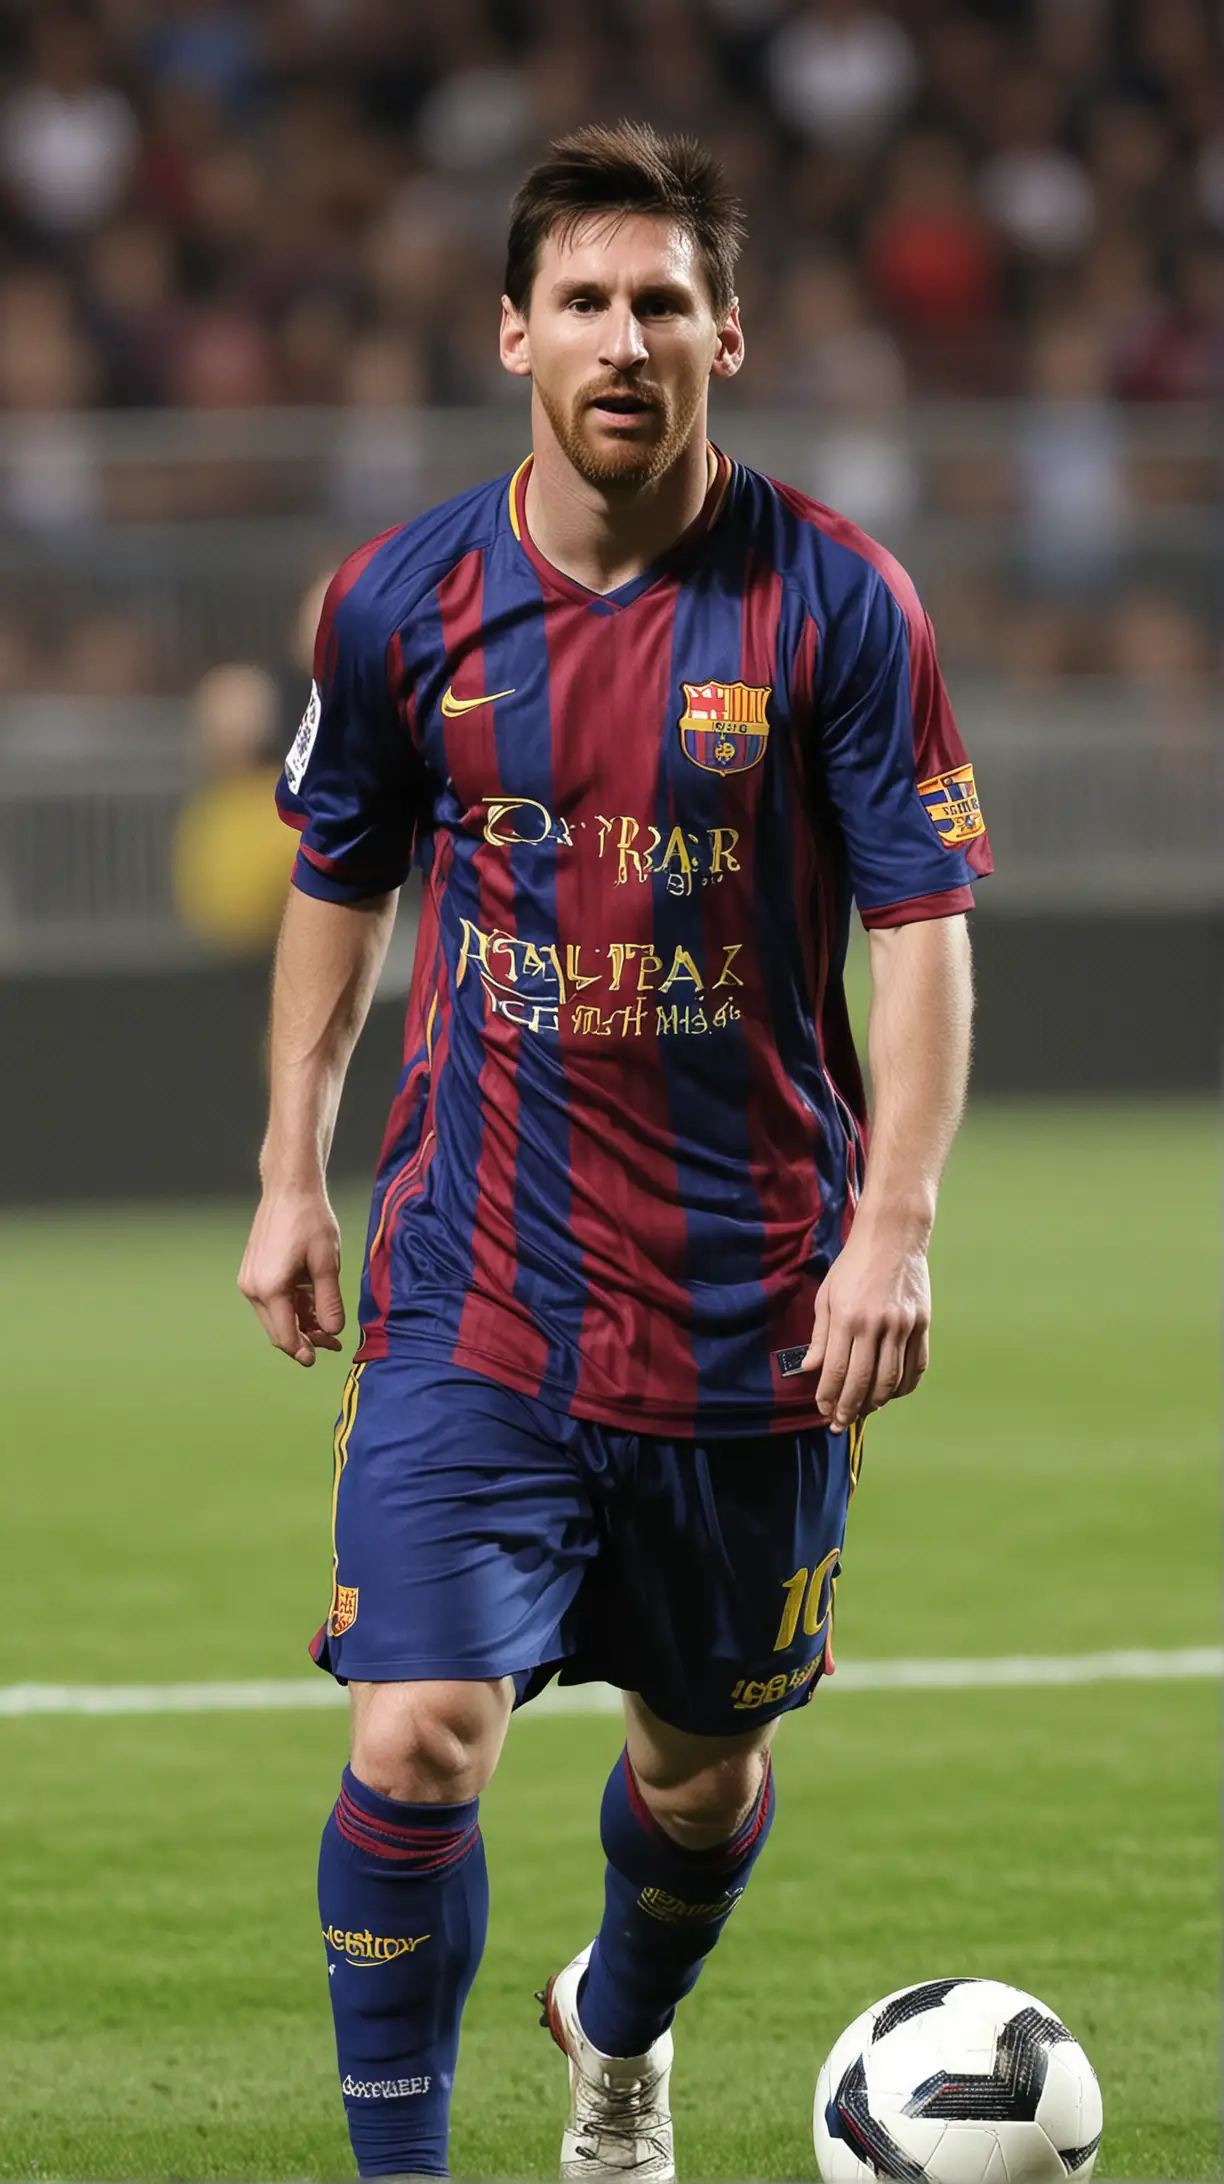 Lionel Messi (born 1987):  
